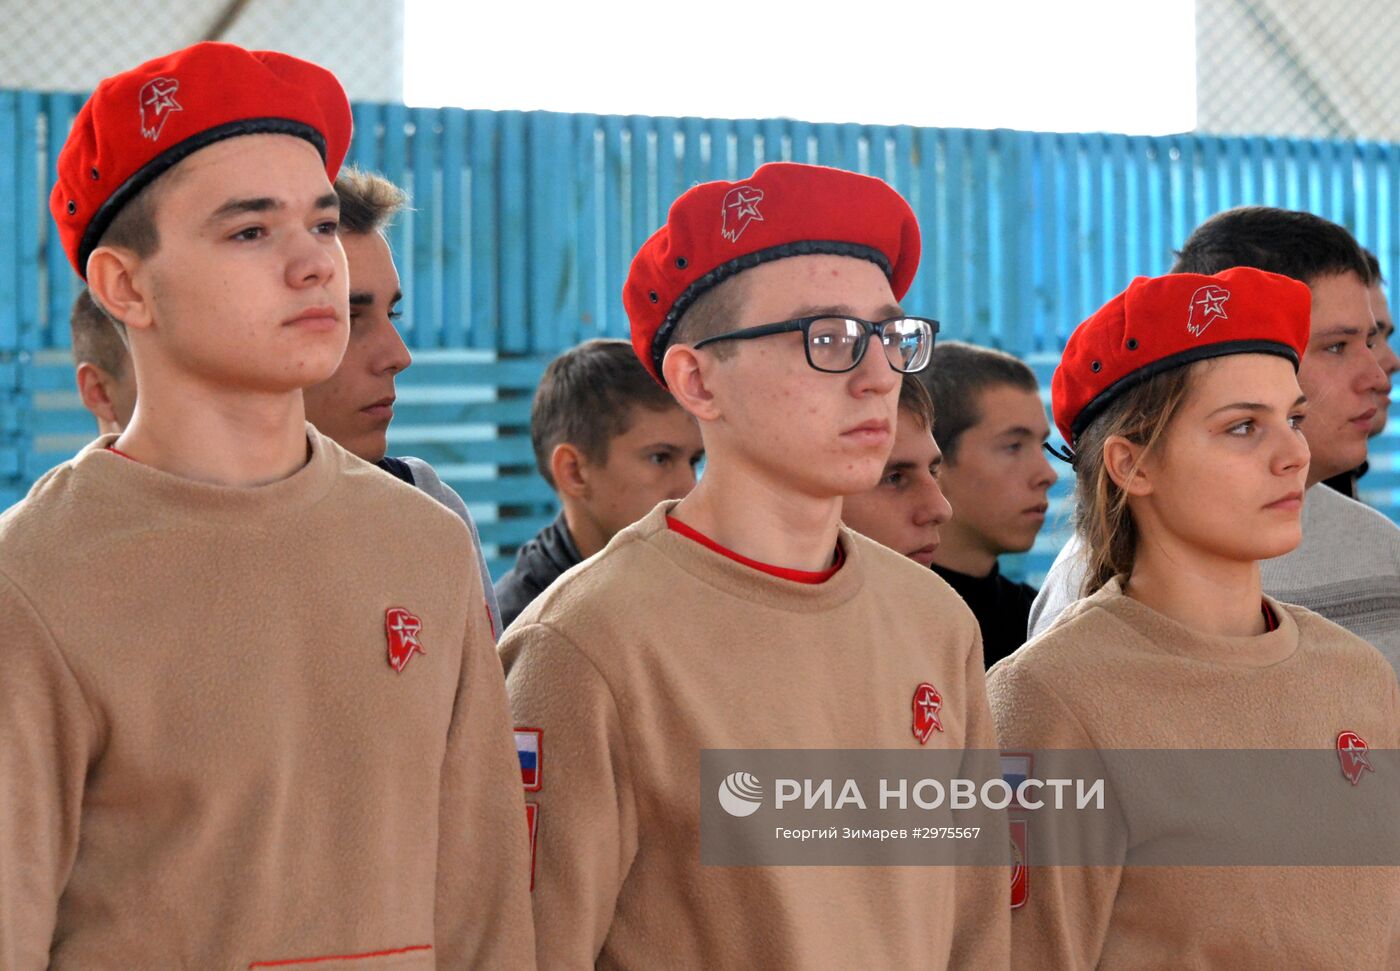 Слет регионального отделения военно-патриотического движения "Юнармия" в Краснодаре